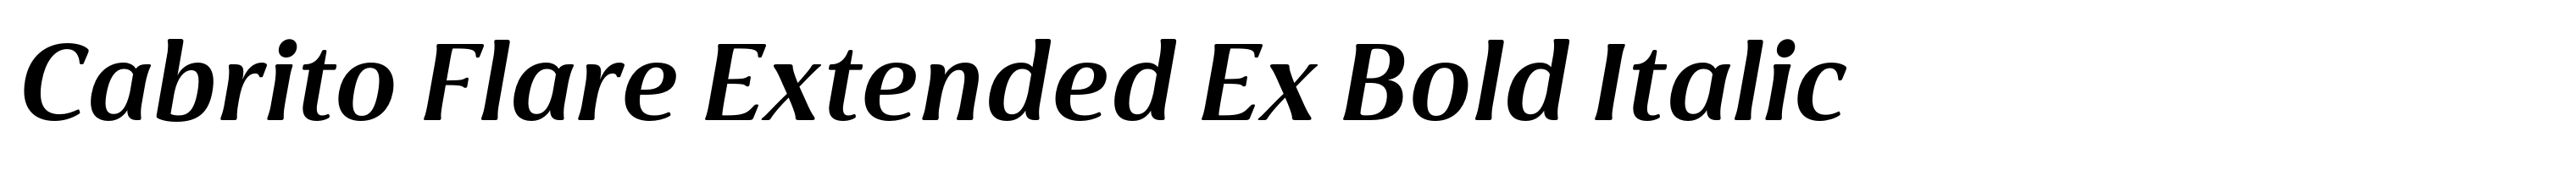 Cabrito Flare Extended Ex Bold Italic